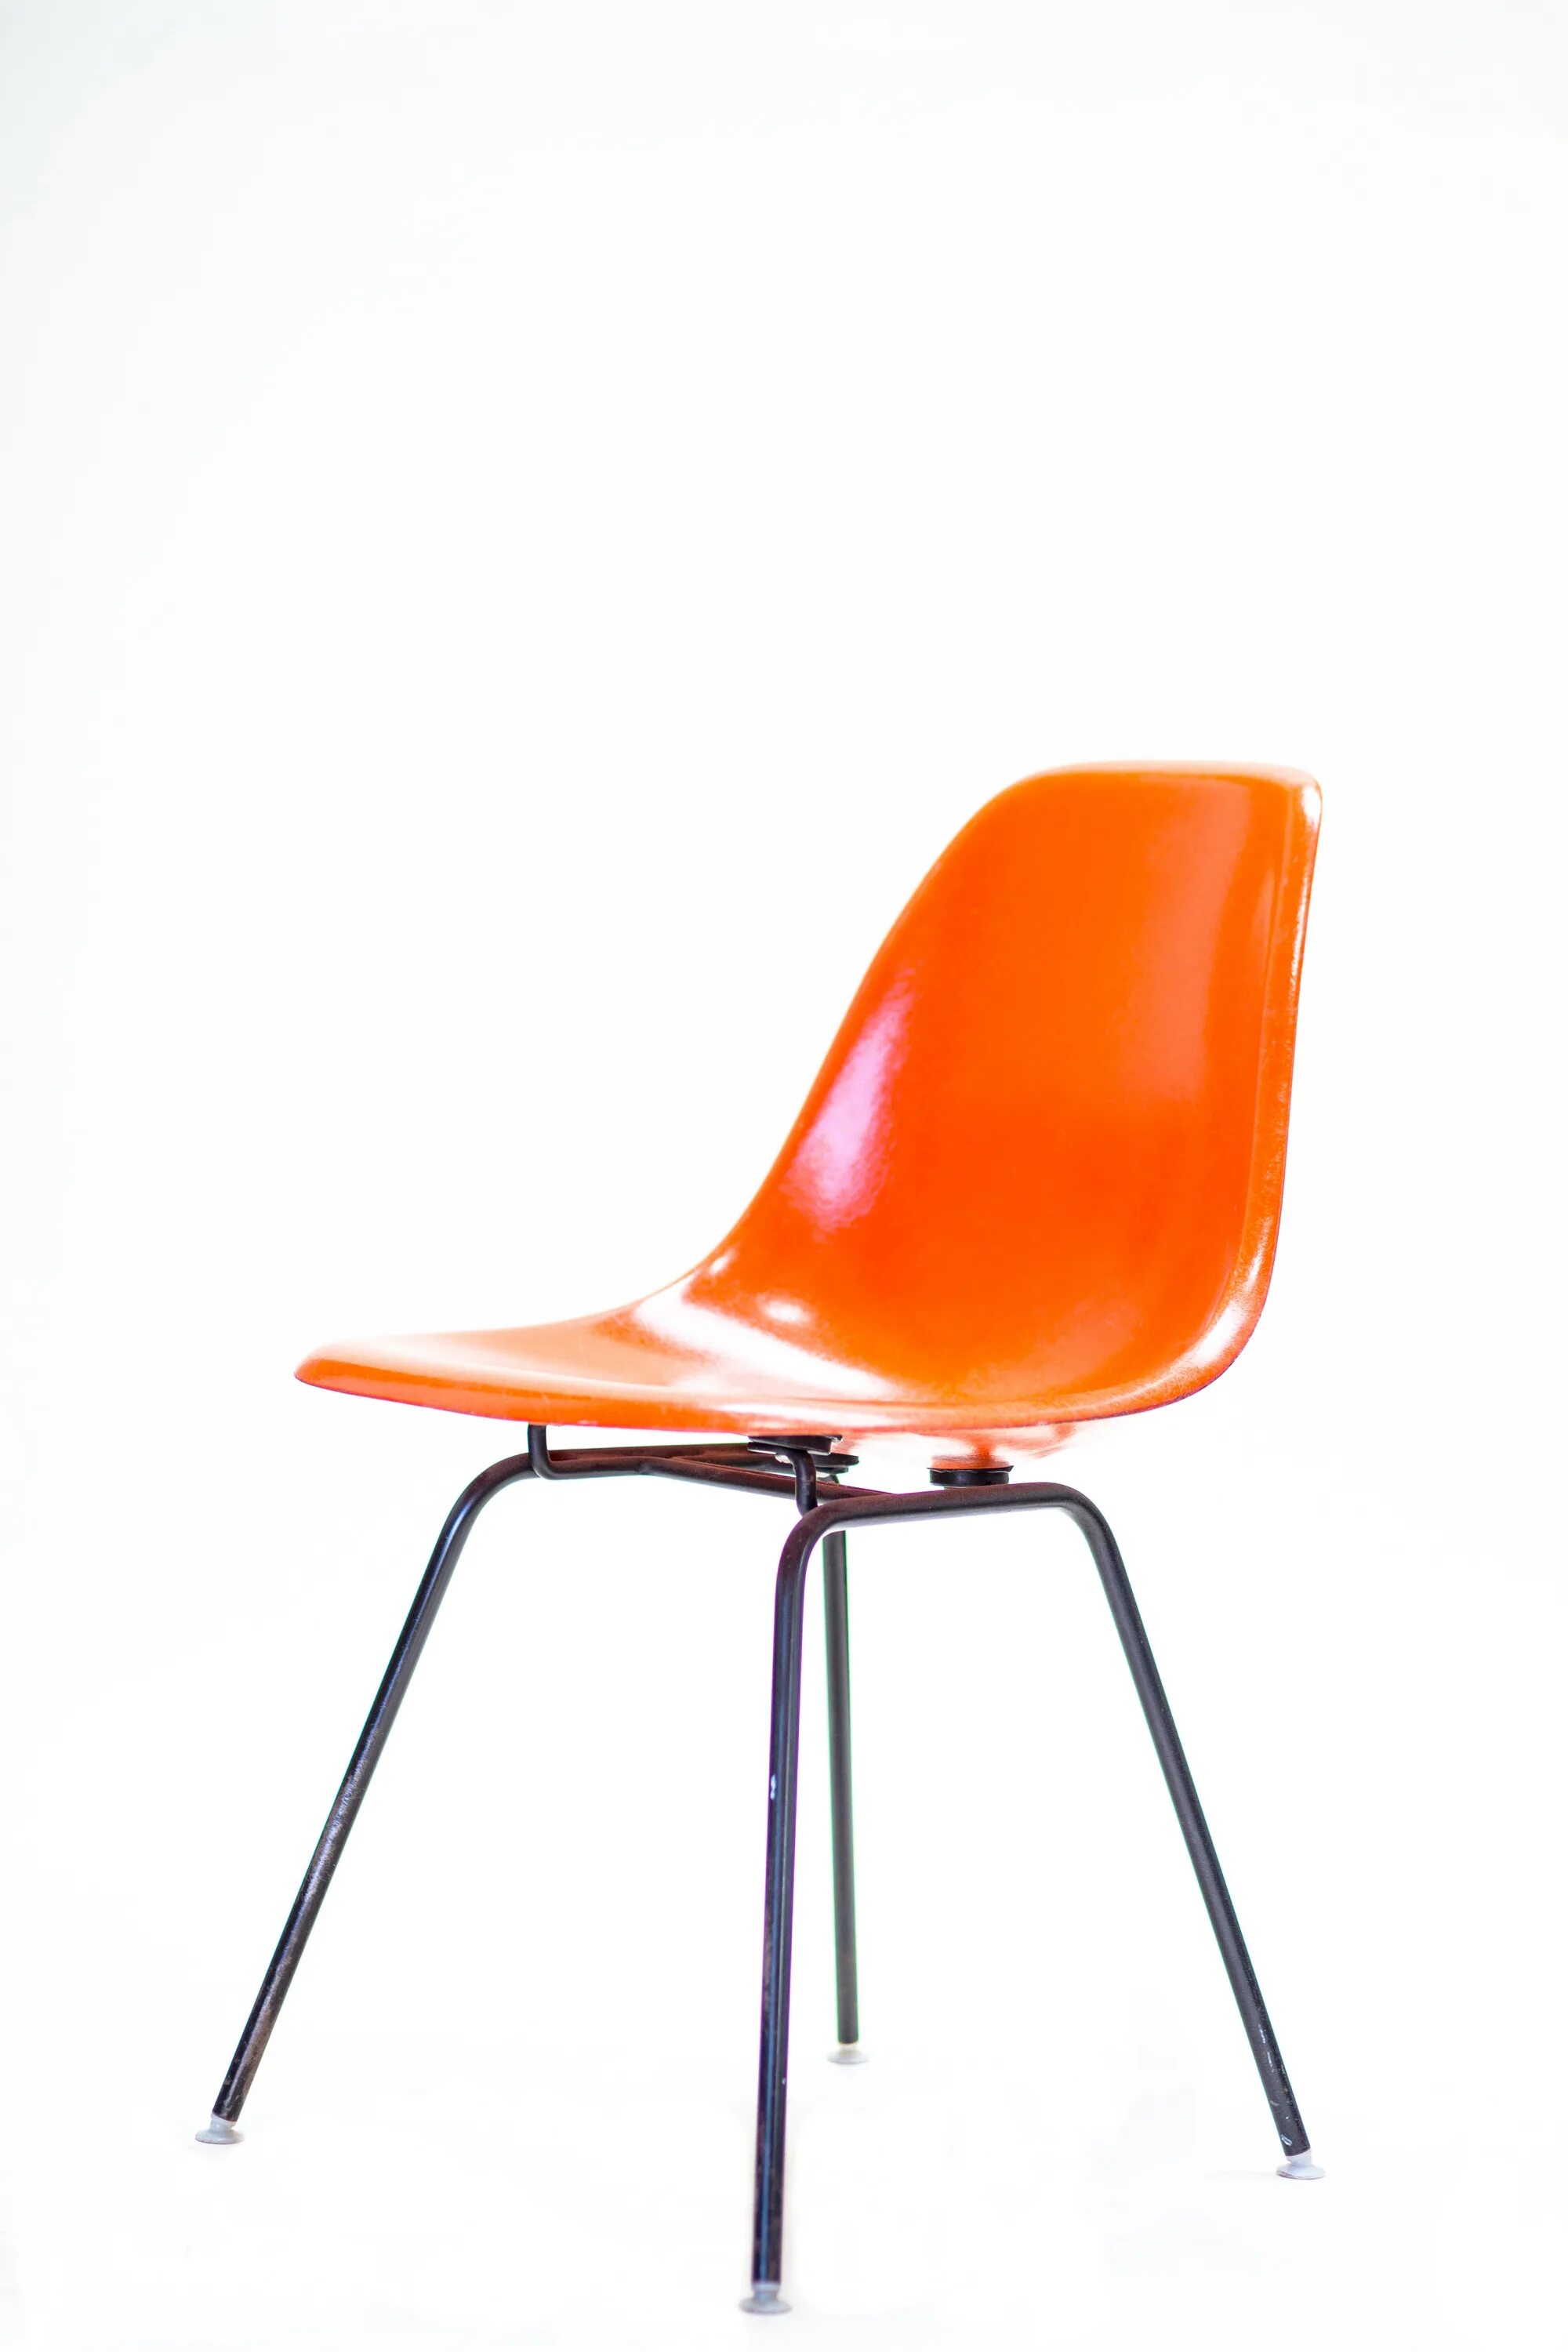 Купить оранжевый стул. Оранжевый стул. Стул оранжевого цвета. Стул оранжевый для кухни. Стулья с оранжевой обивкой.